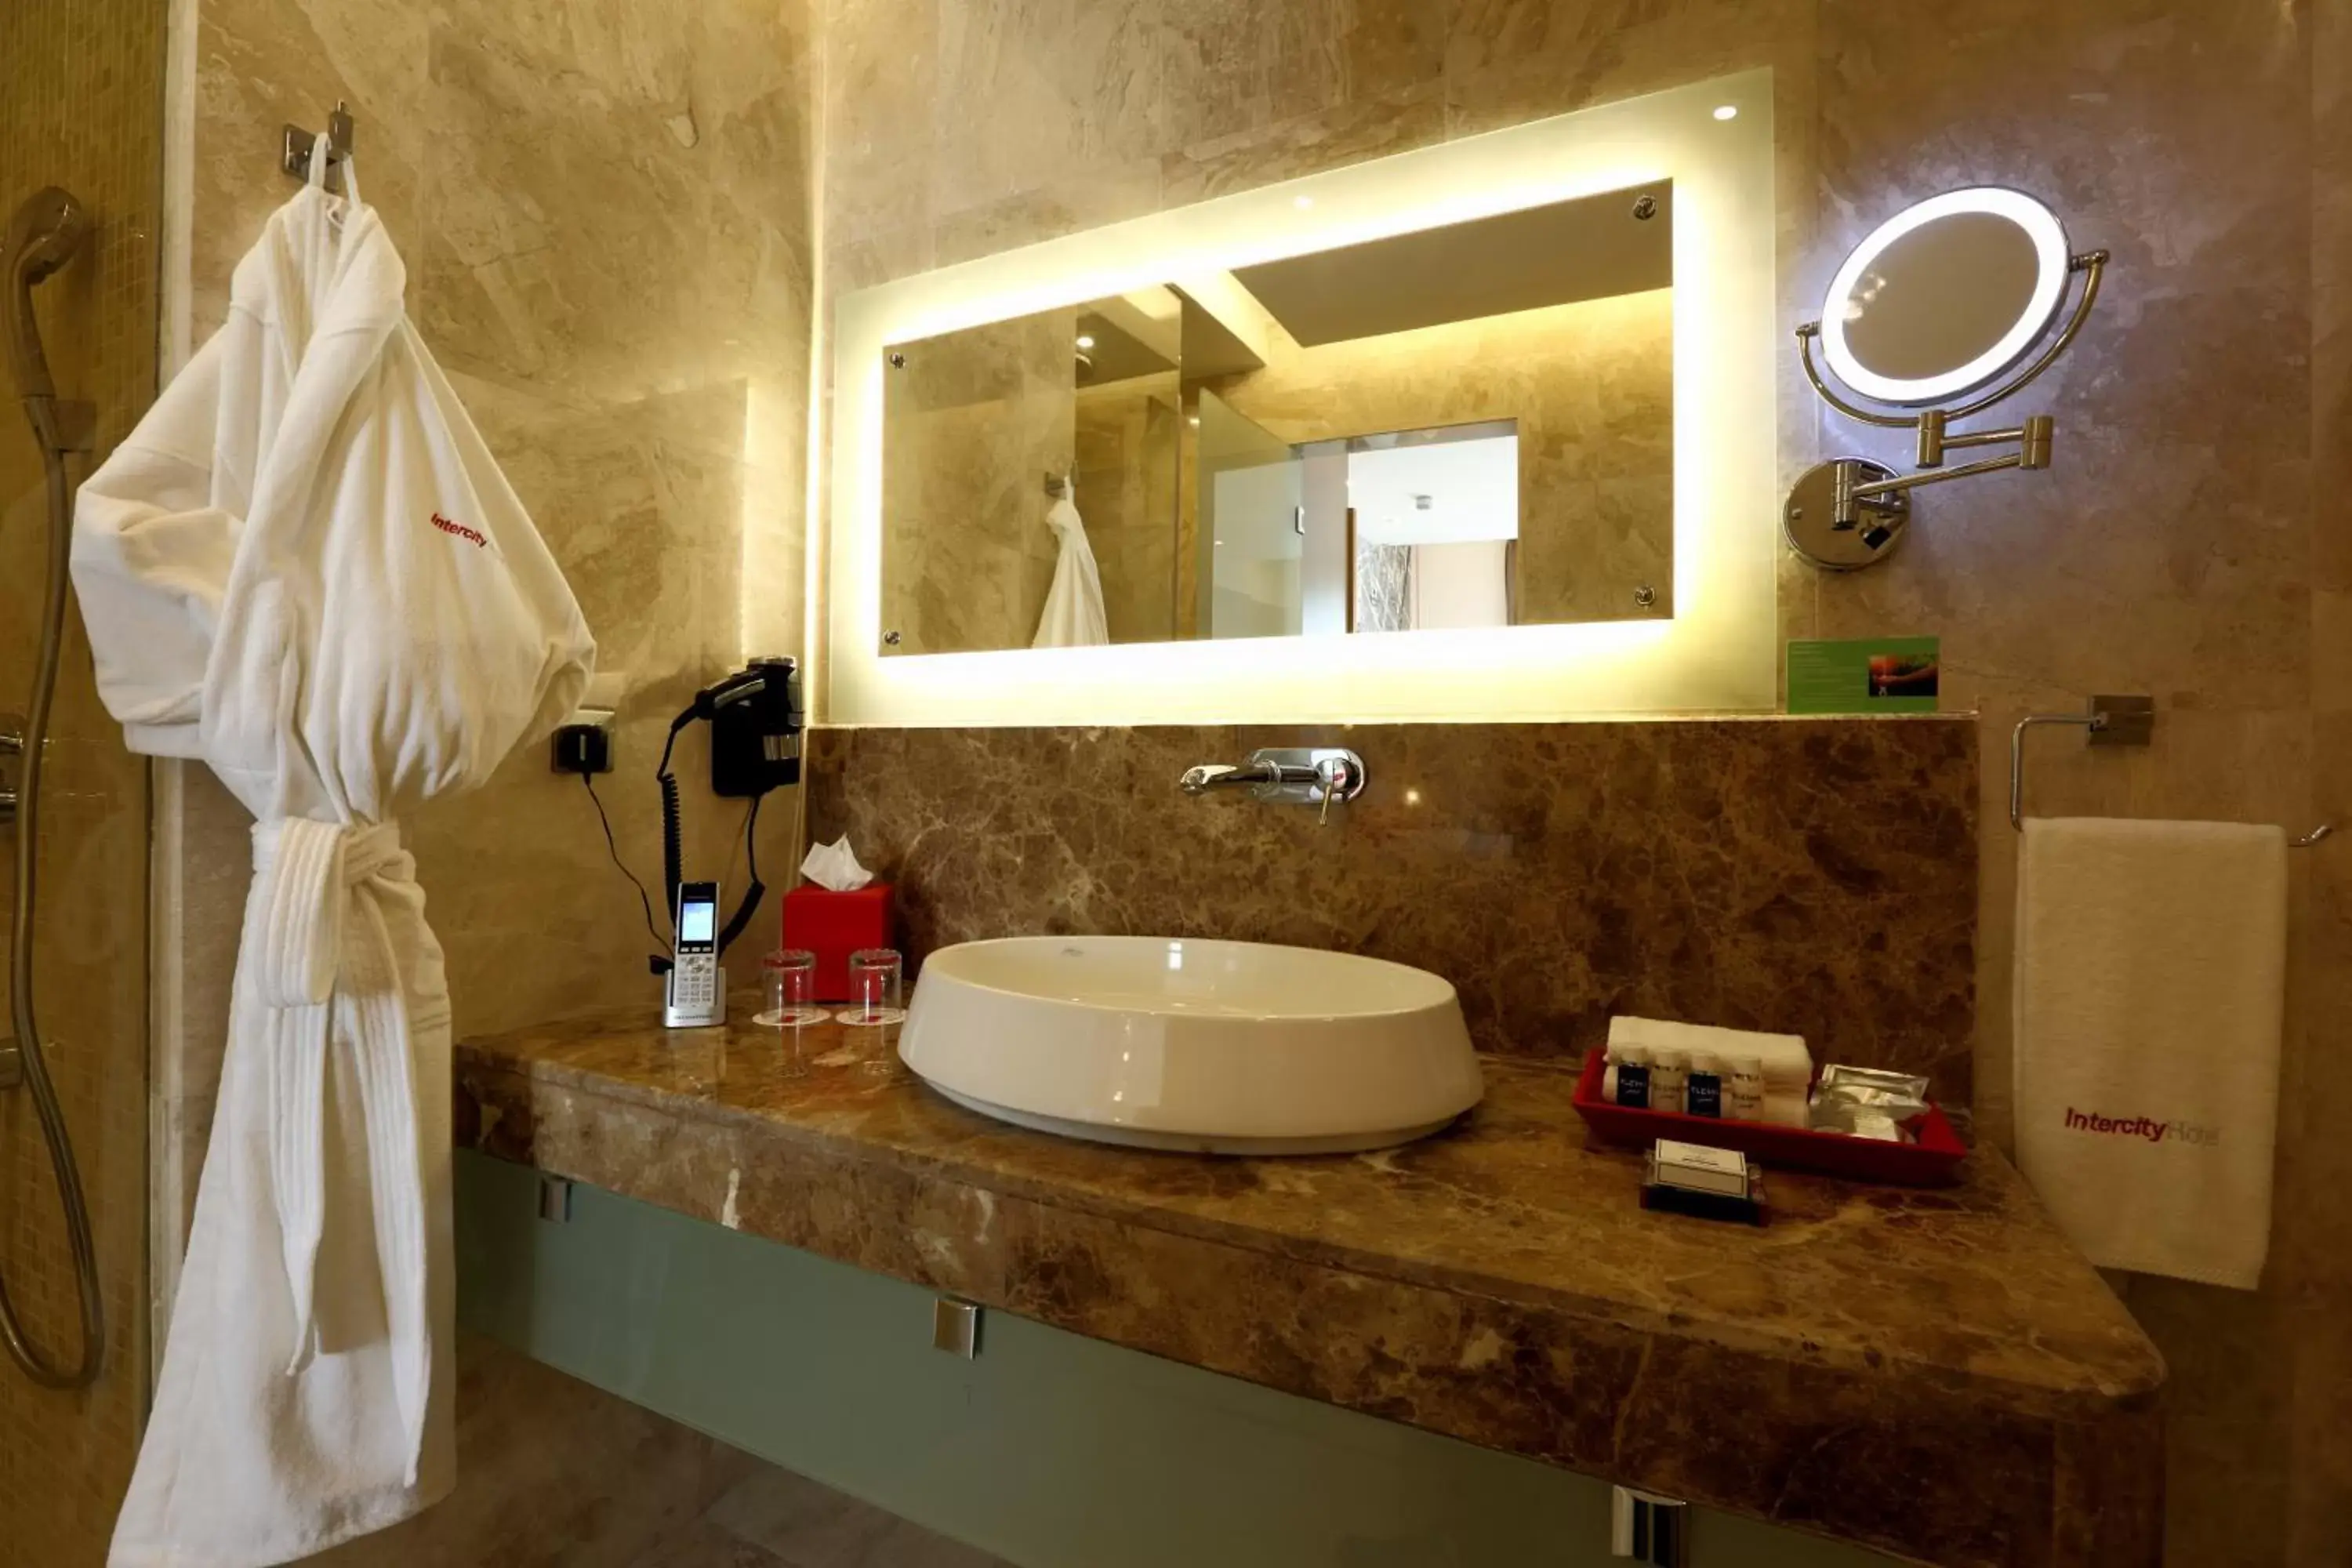 Shower, Bathroom in IntercityHotel Riyadh Malaz